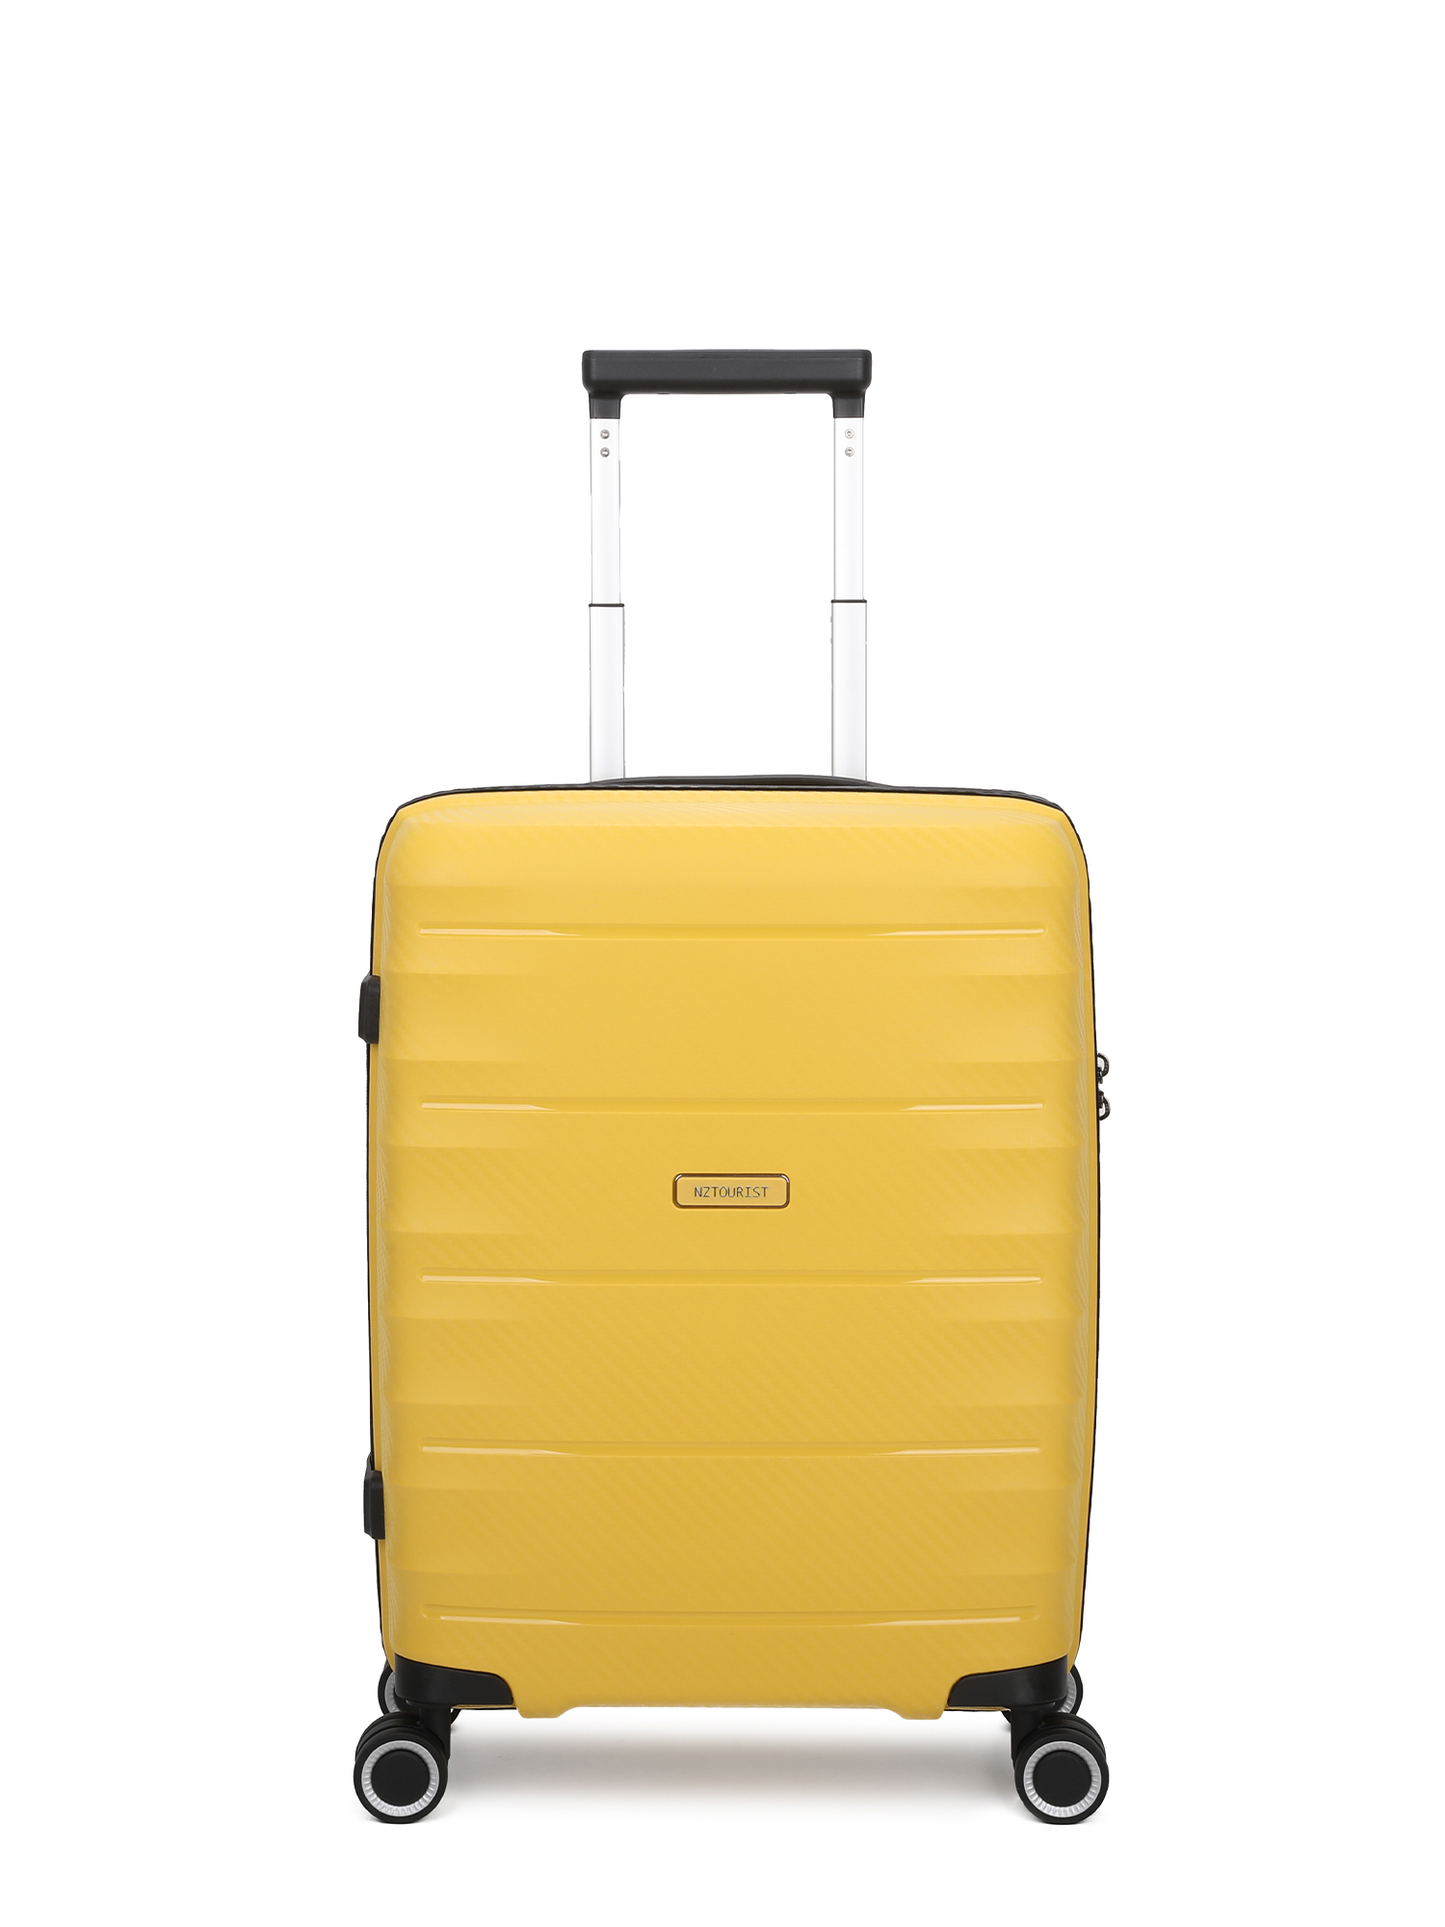 NZTourist Pro Traveller 55cm Suitcase - Black